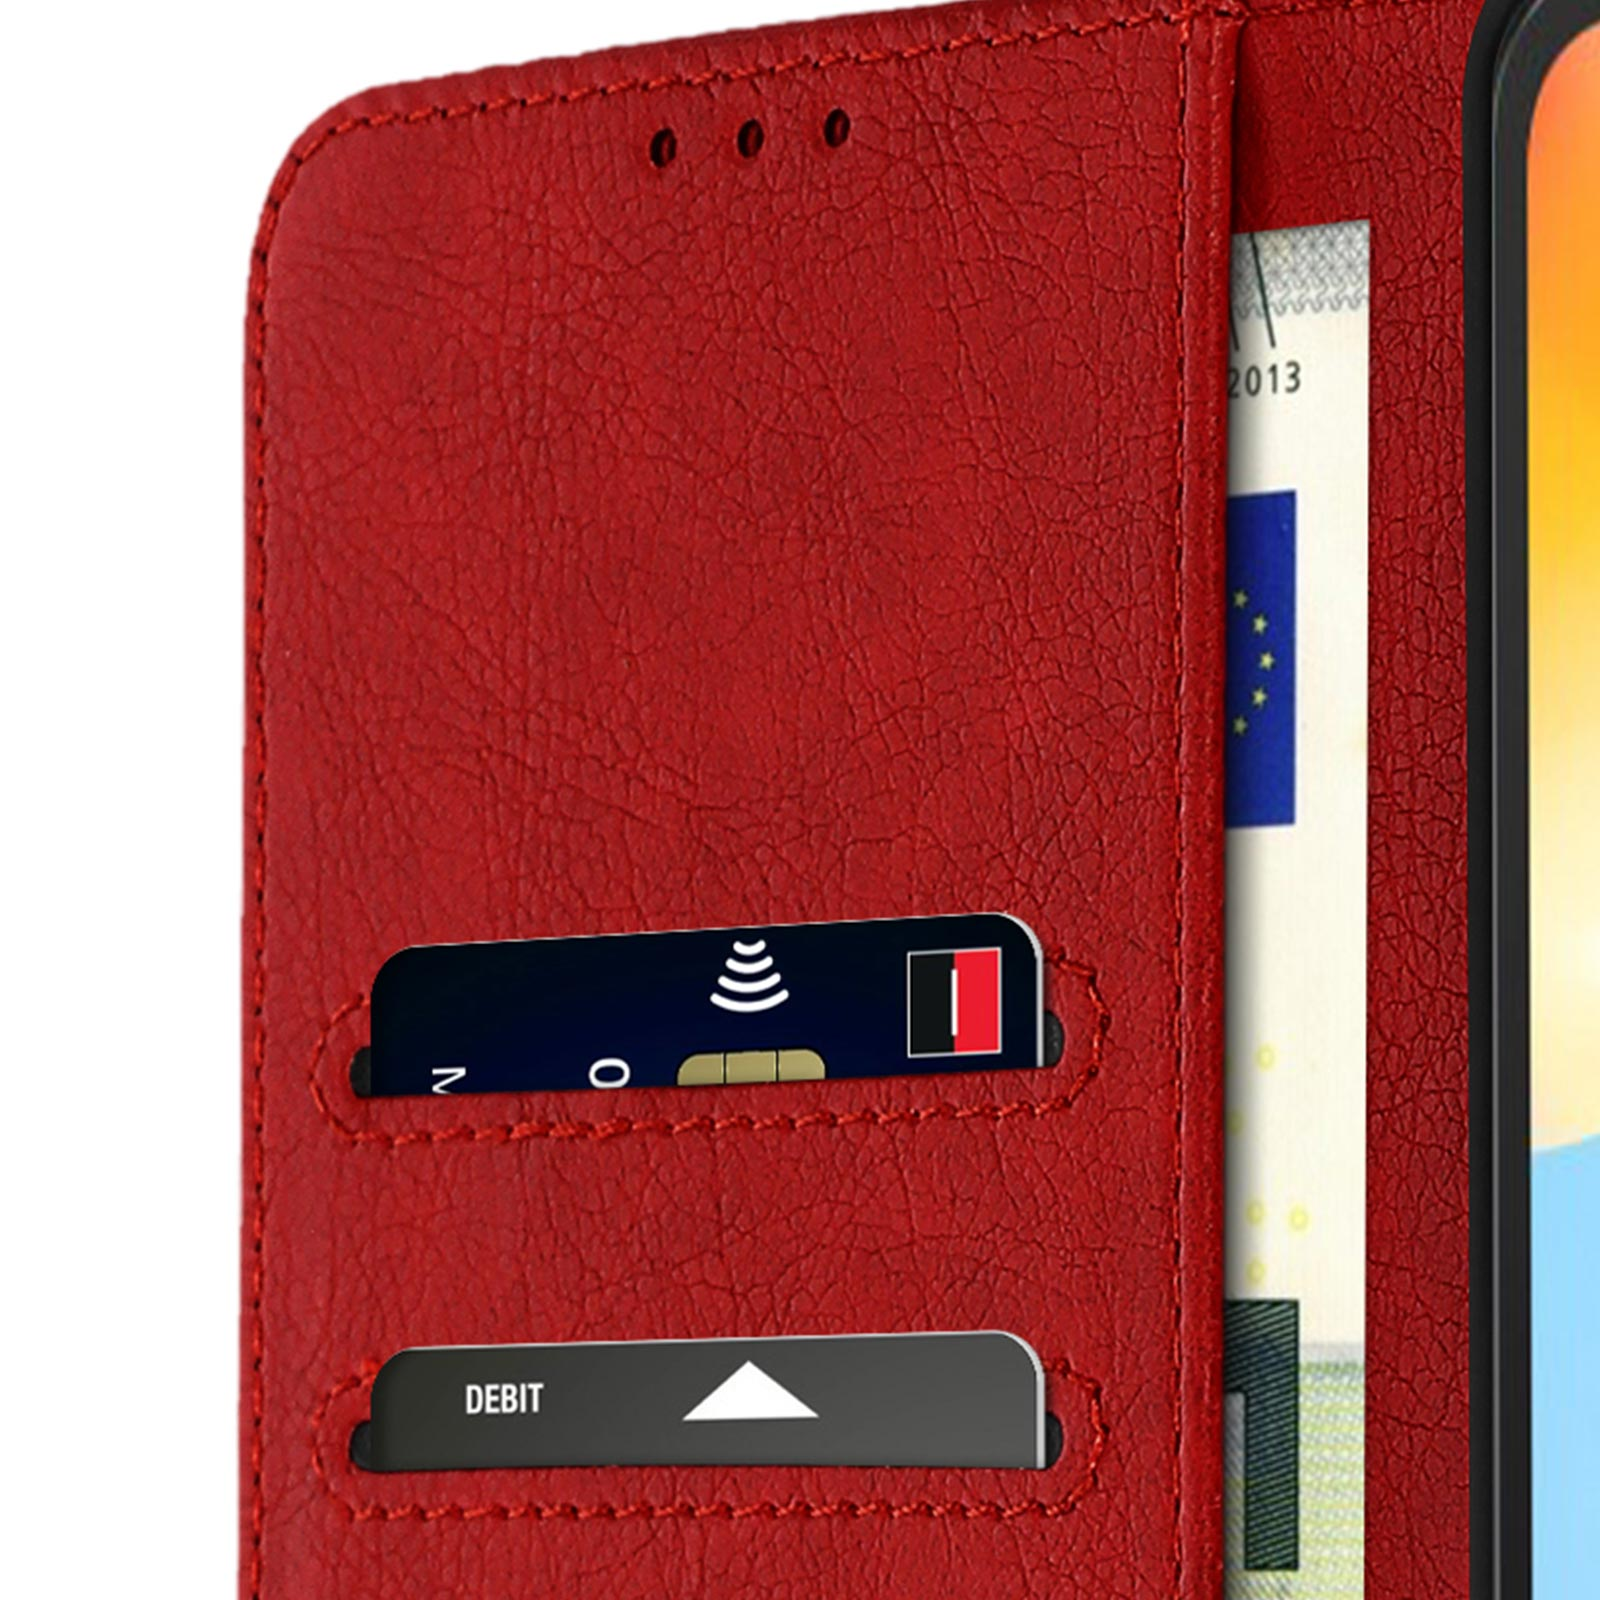 AVIZAR Chester Redmi Series, Rot Xiaomi, Bookcover, 10C